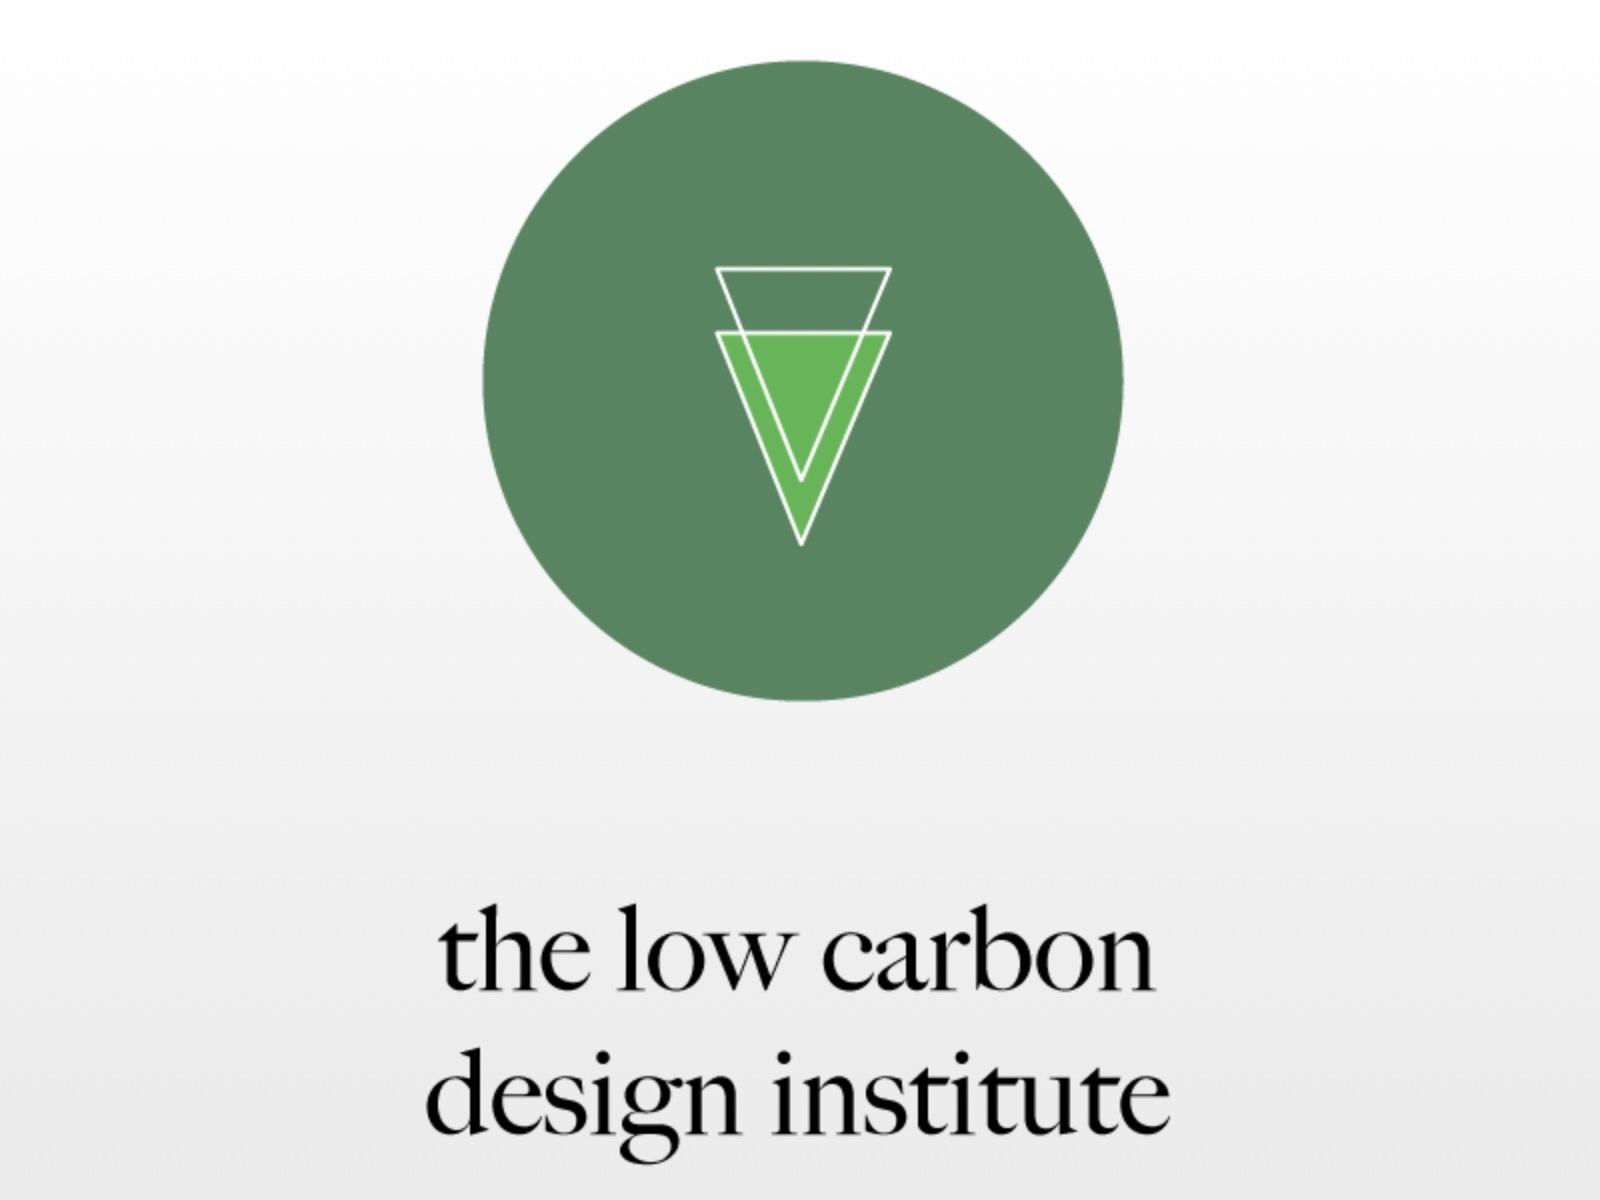 The institute logo